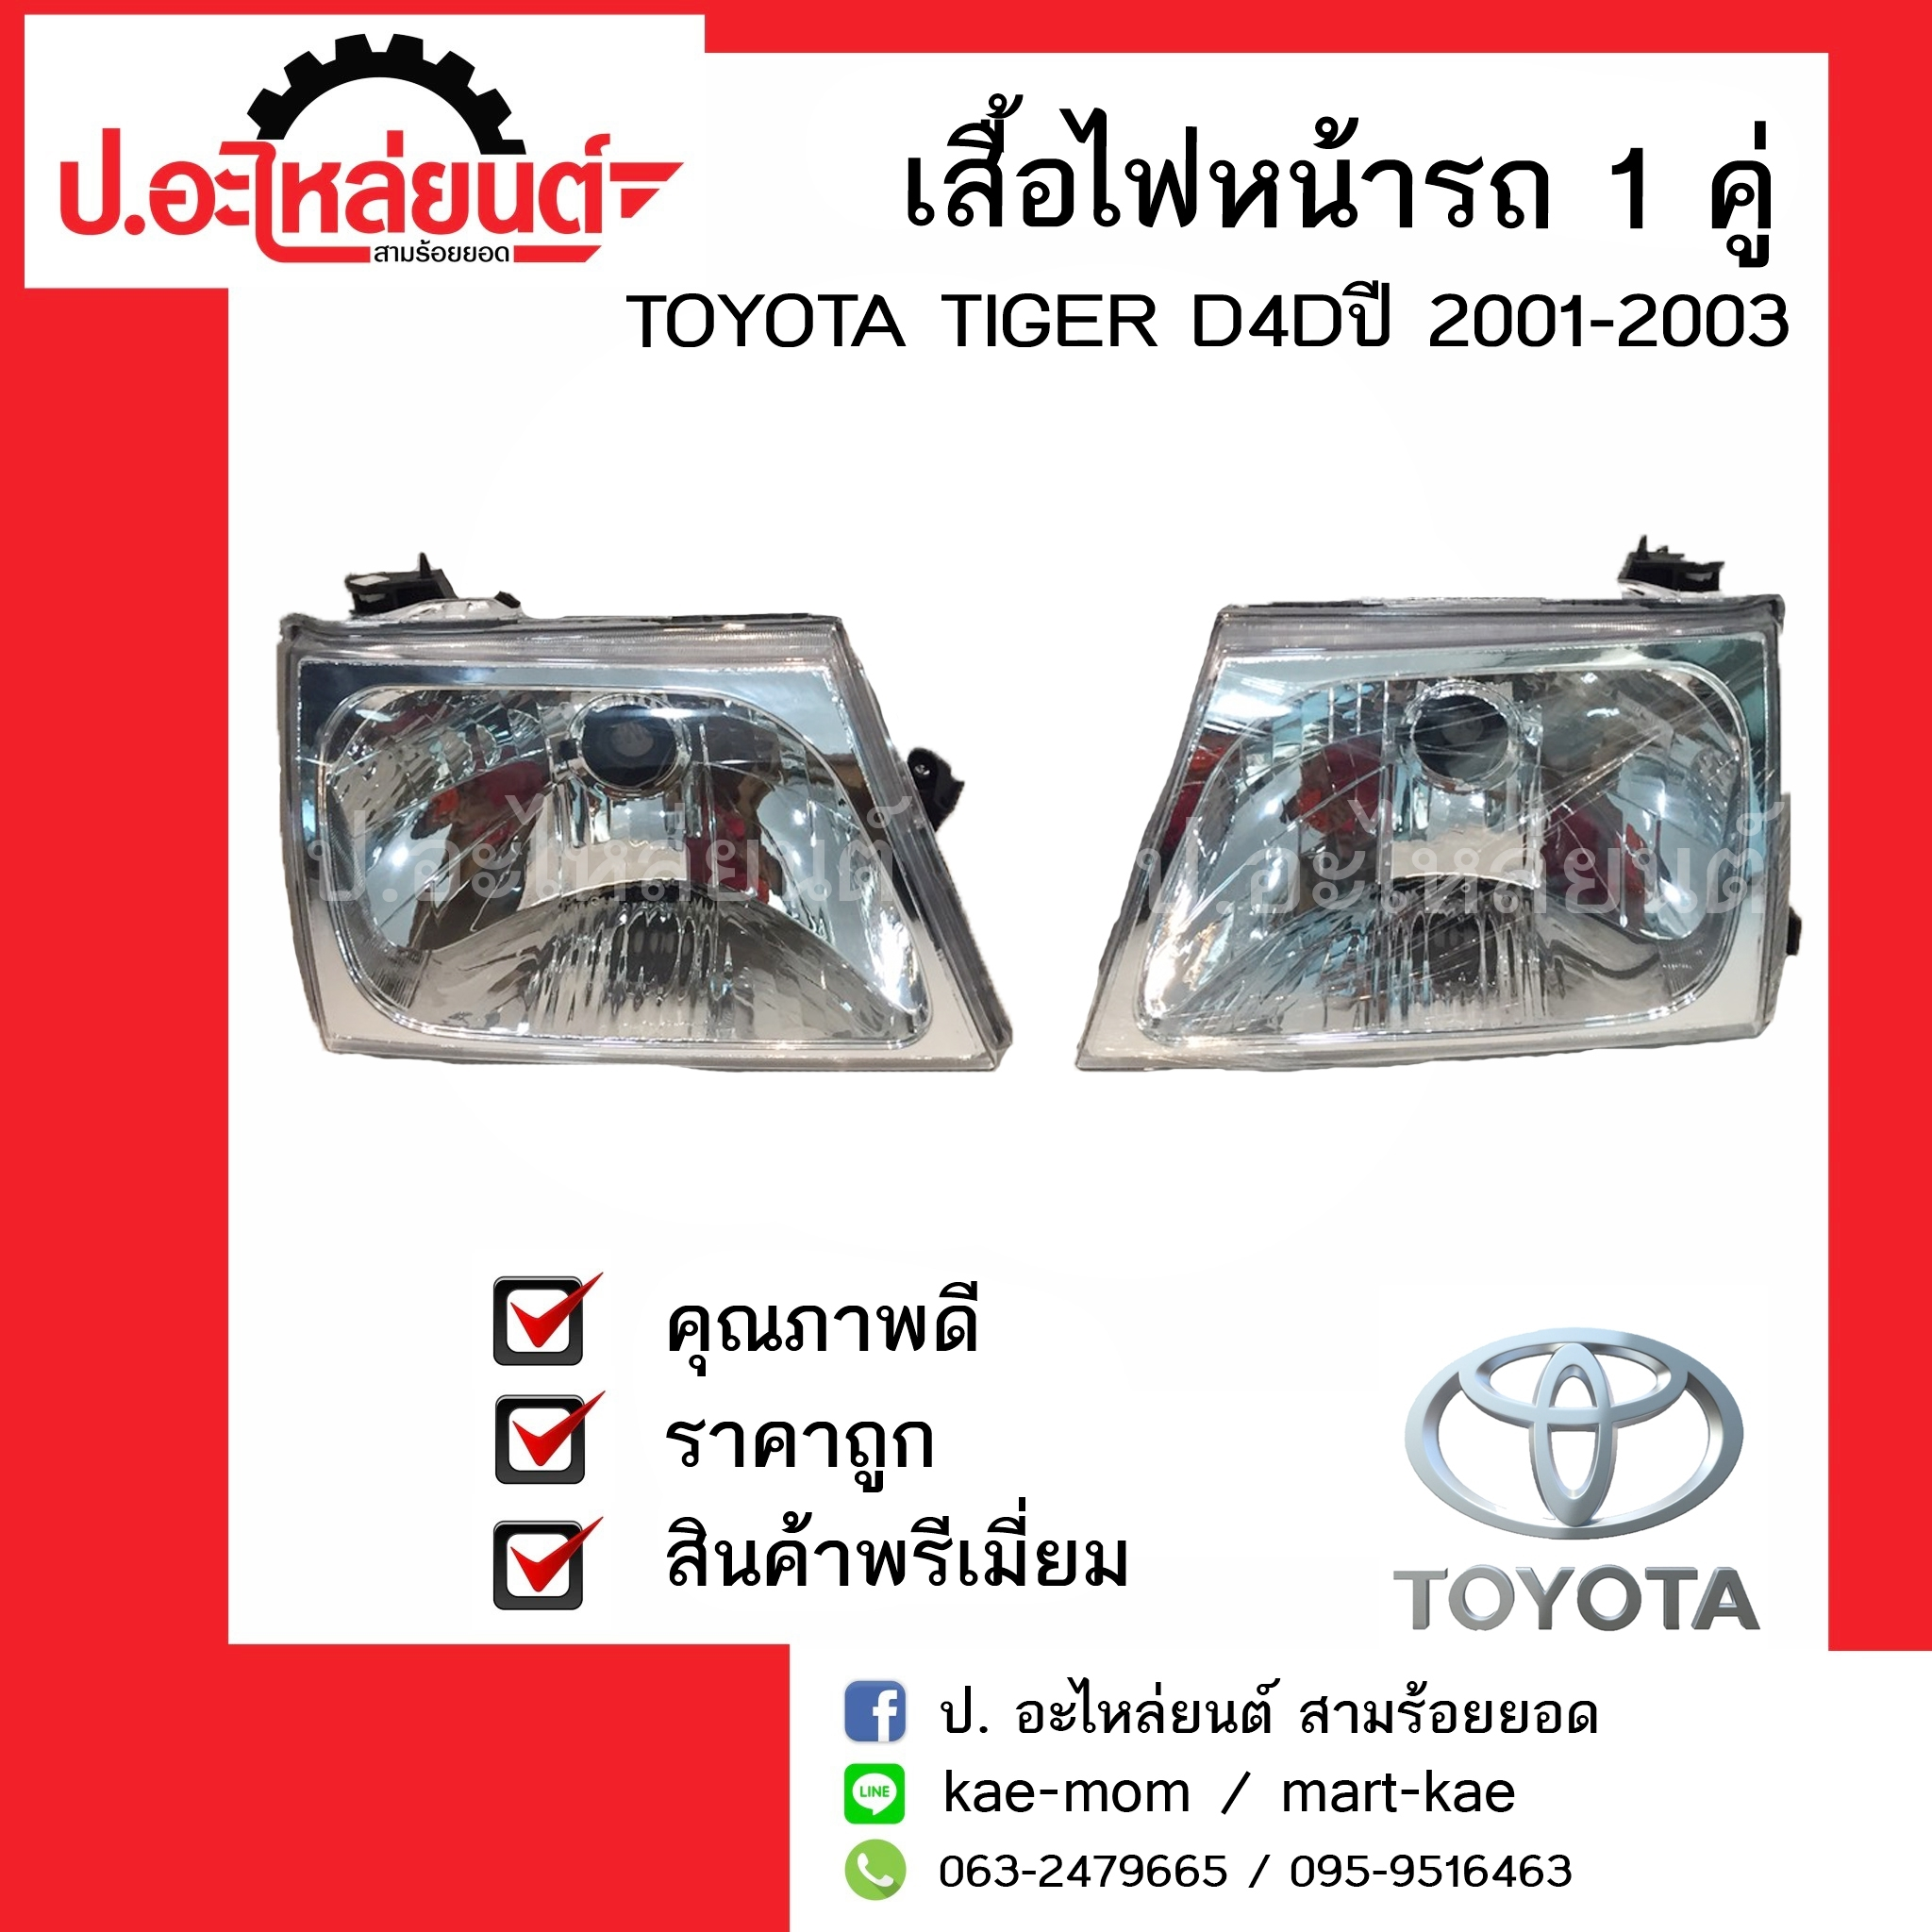 ไฟหน้ารถ 1 คู่ โตโยต้า ไทเกอรฺ์ D4D ปี 2001-2003 ข้างซ้ายข้างขวา (TOYOTA TIGER D4D  LH/RH) ยี่ห้อ Diamond